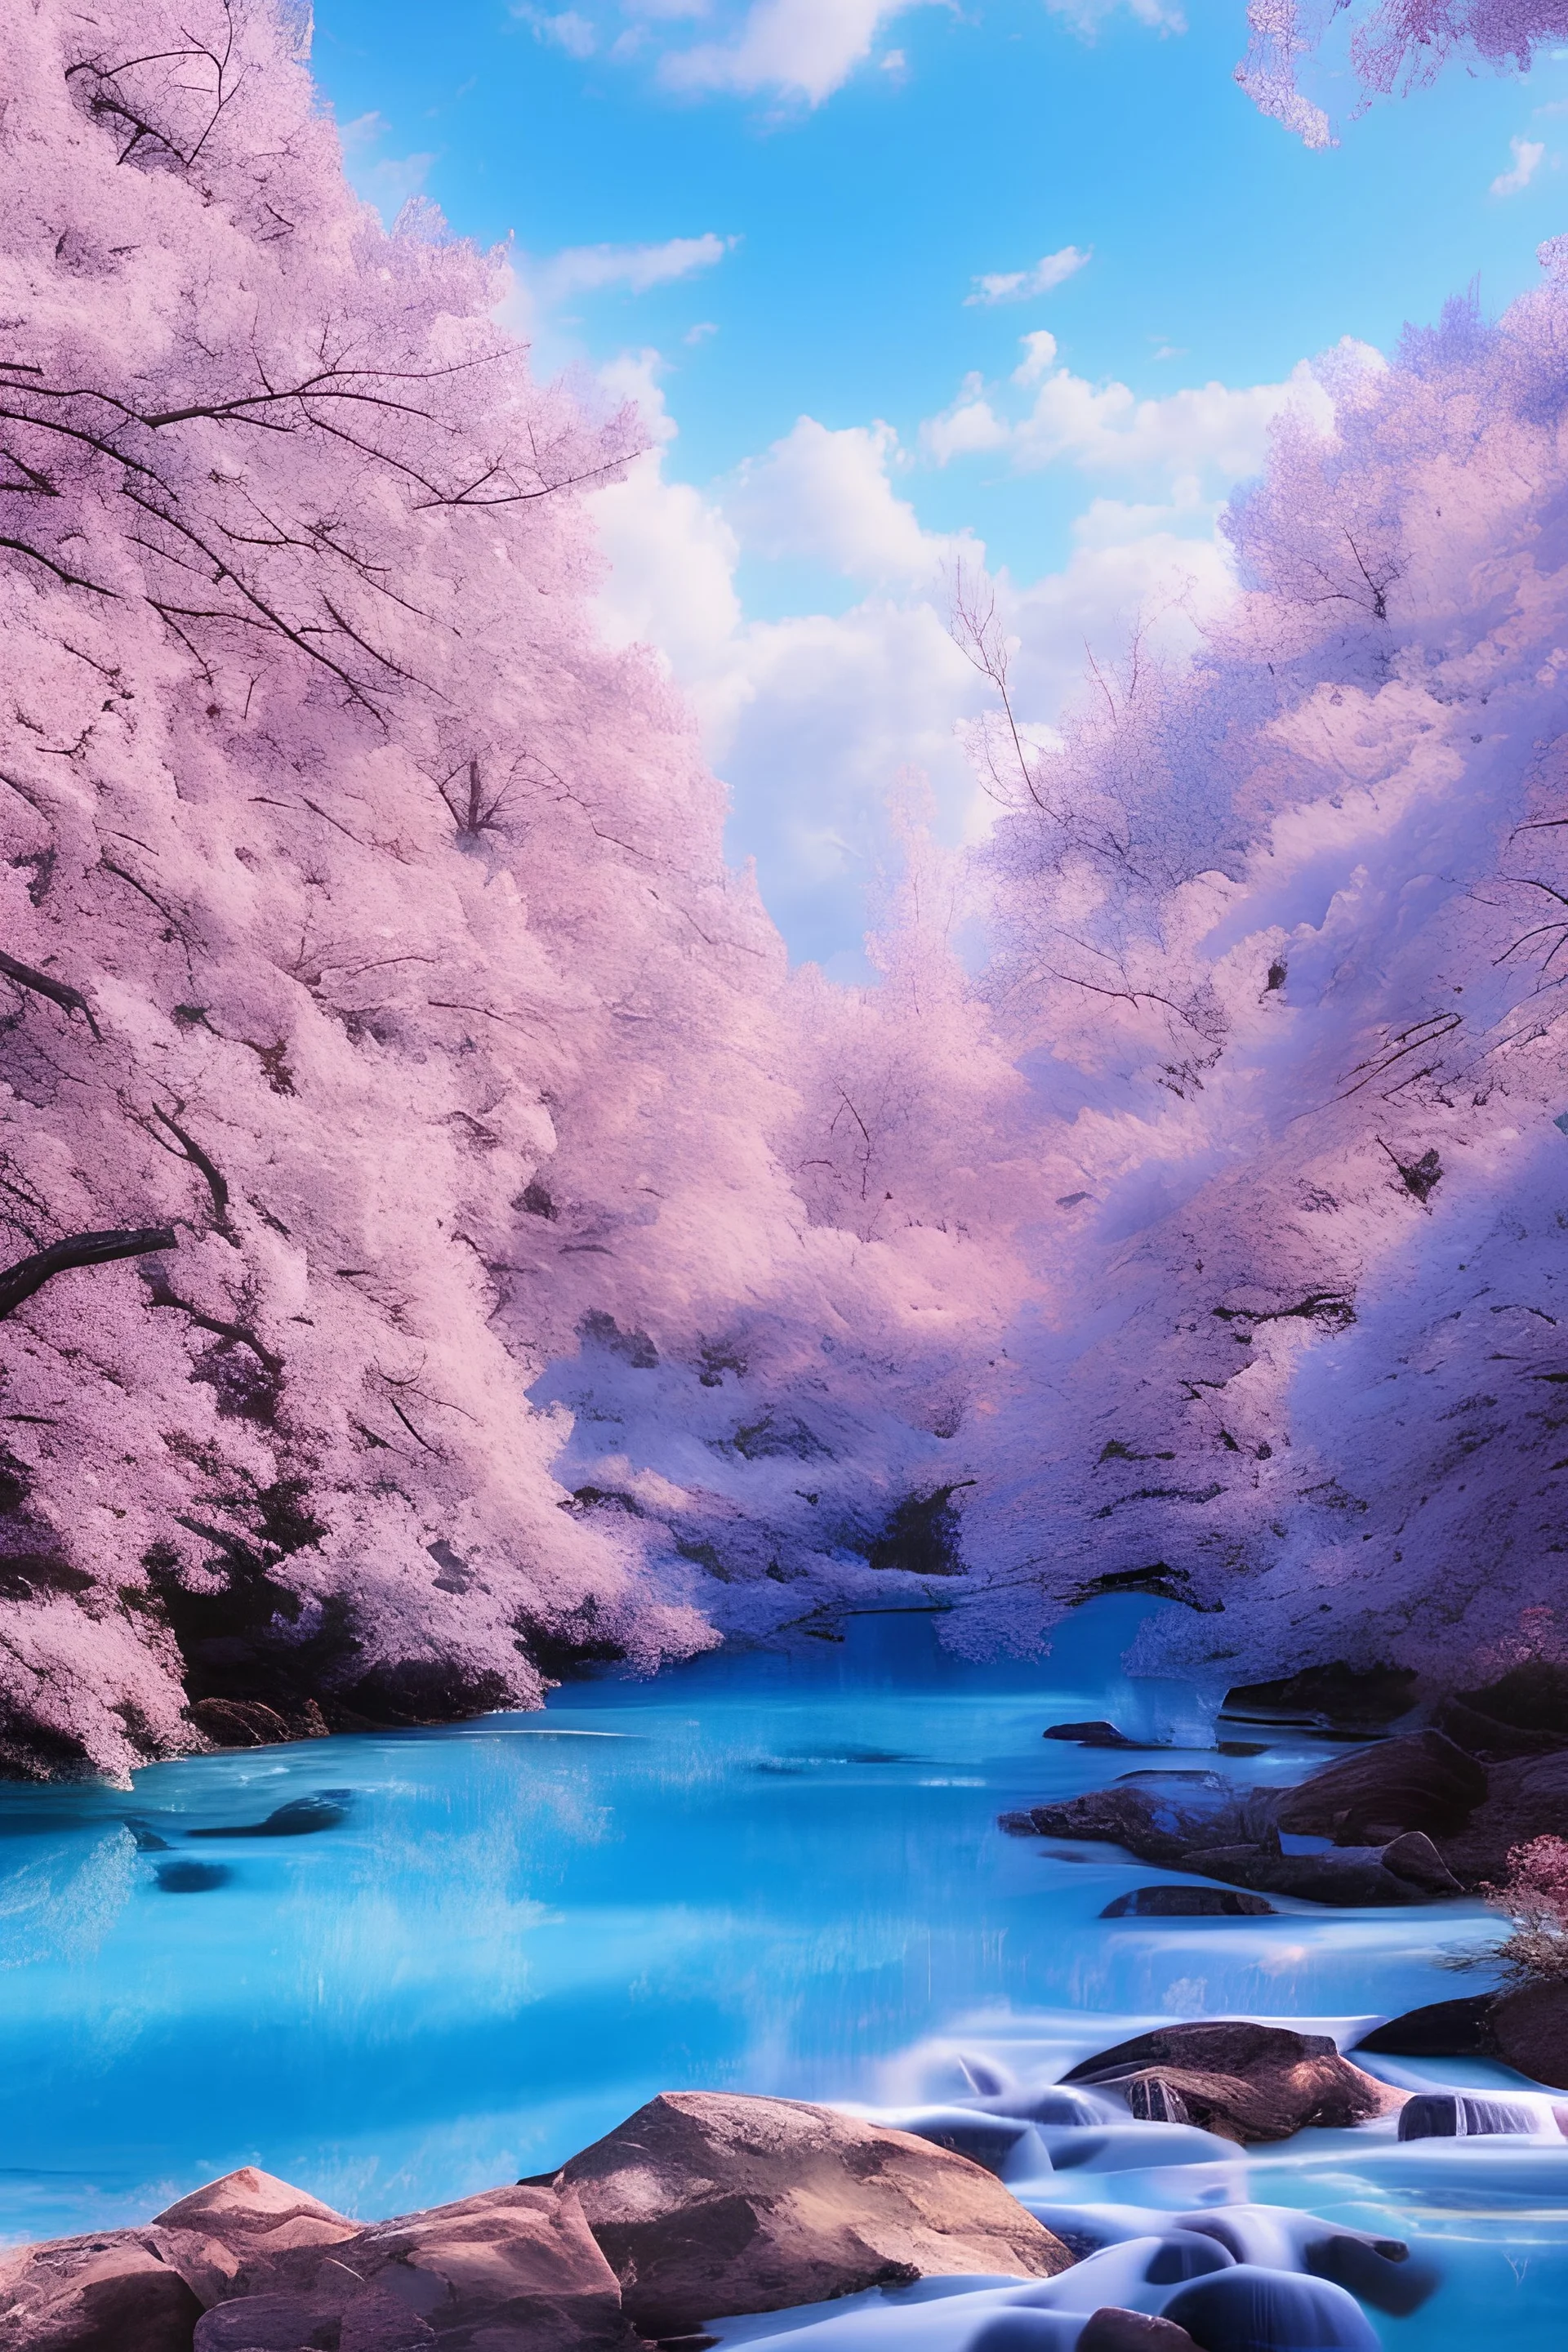 Une Source bleue, eau qui coule limpide crystalline , ciel bleu, paysage douceur bleue,arbres roses , harmonie , belle lumière